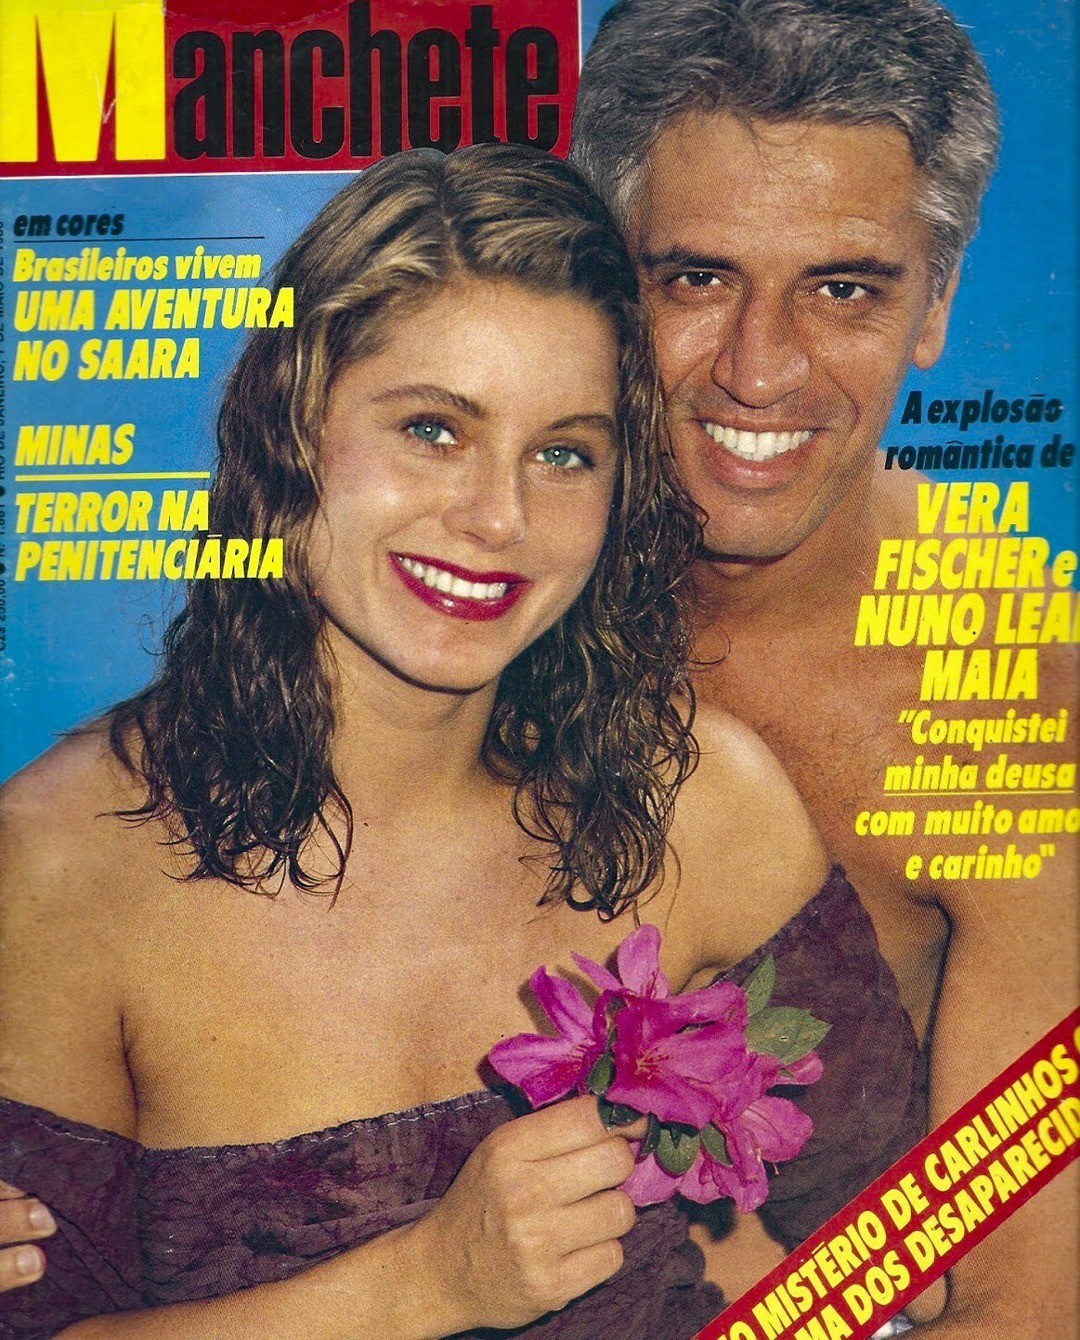 Vera Fischer relembra capa de revista do lado de Nuno Leal Maia (Foto: Reprodução)